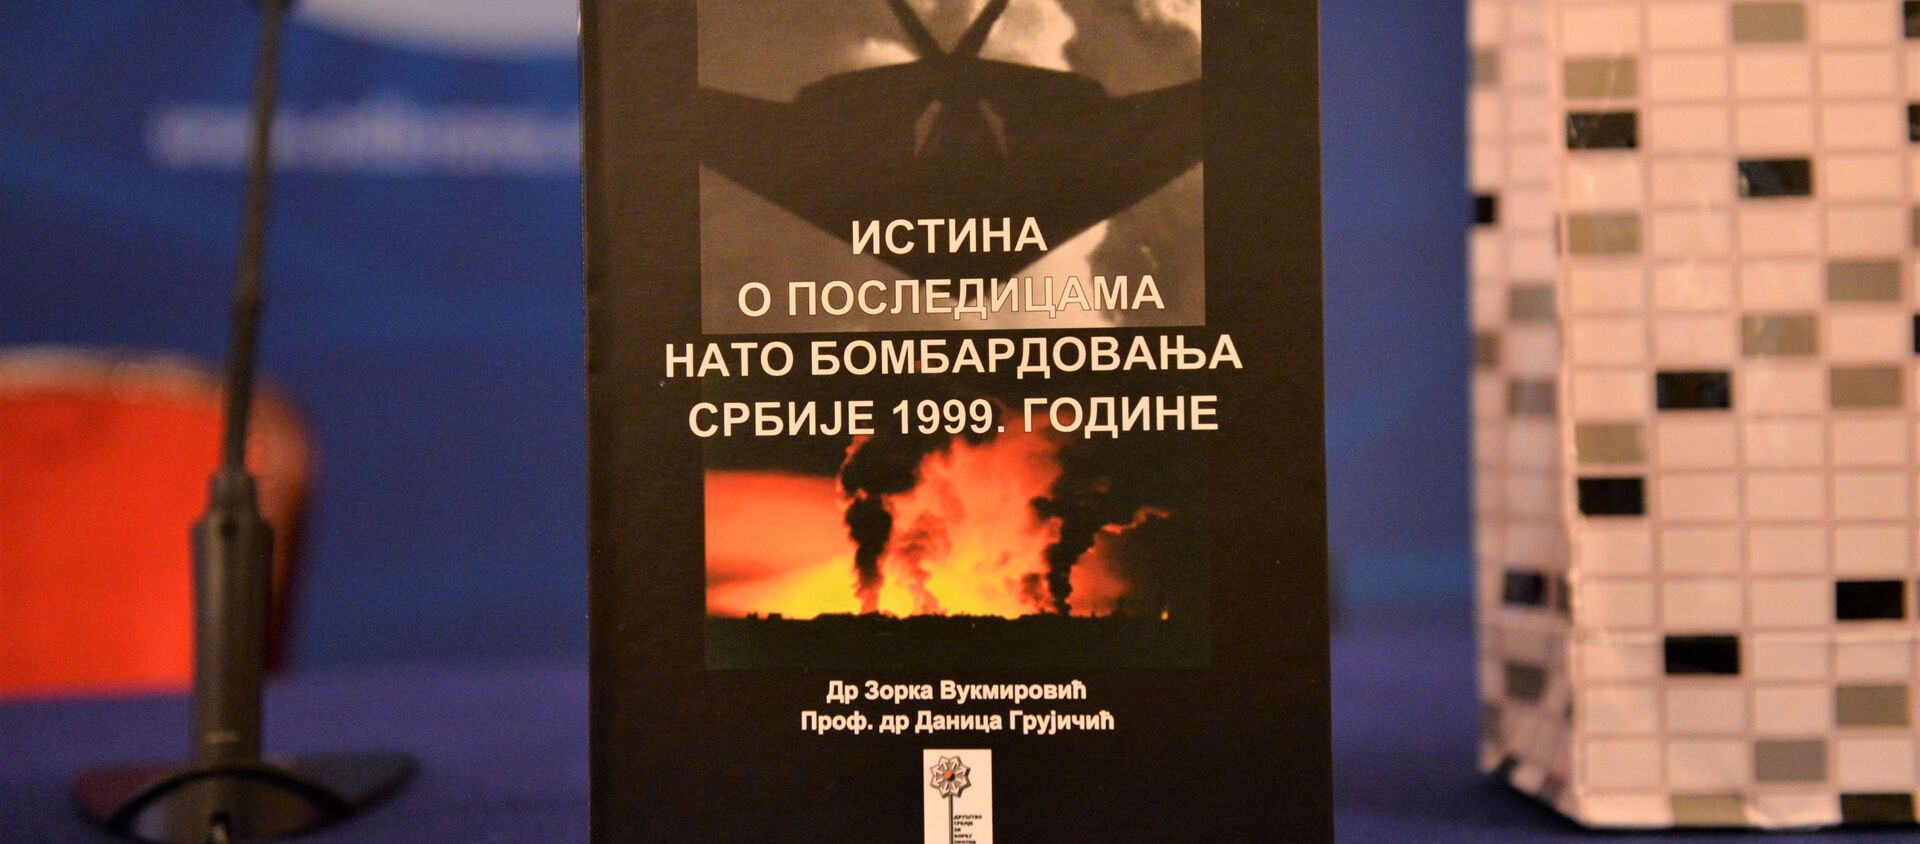 Predstavljanje monografije Istina o posledicama NATO bombardovanja Srbije 1999. - Sputnik Srbija, 1920, 29.06.2021